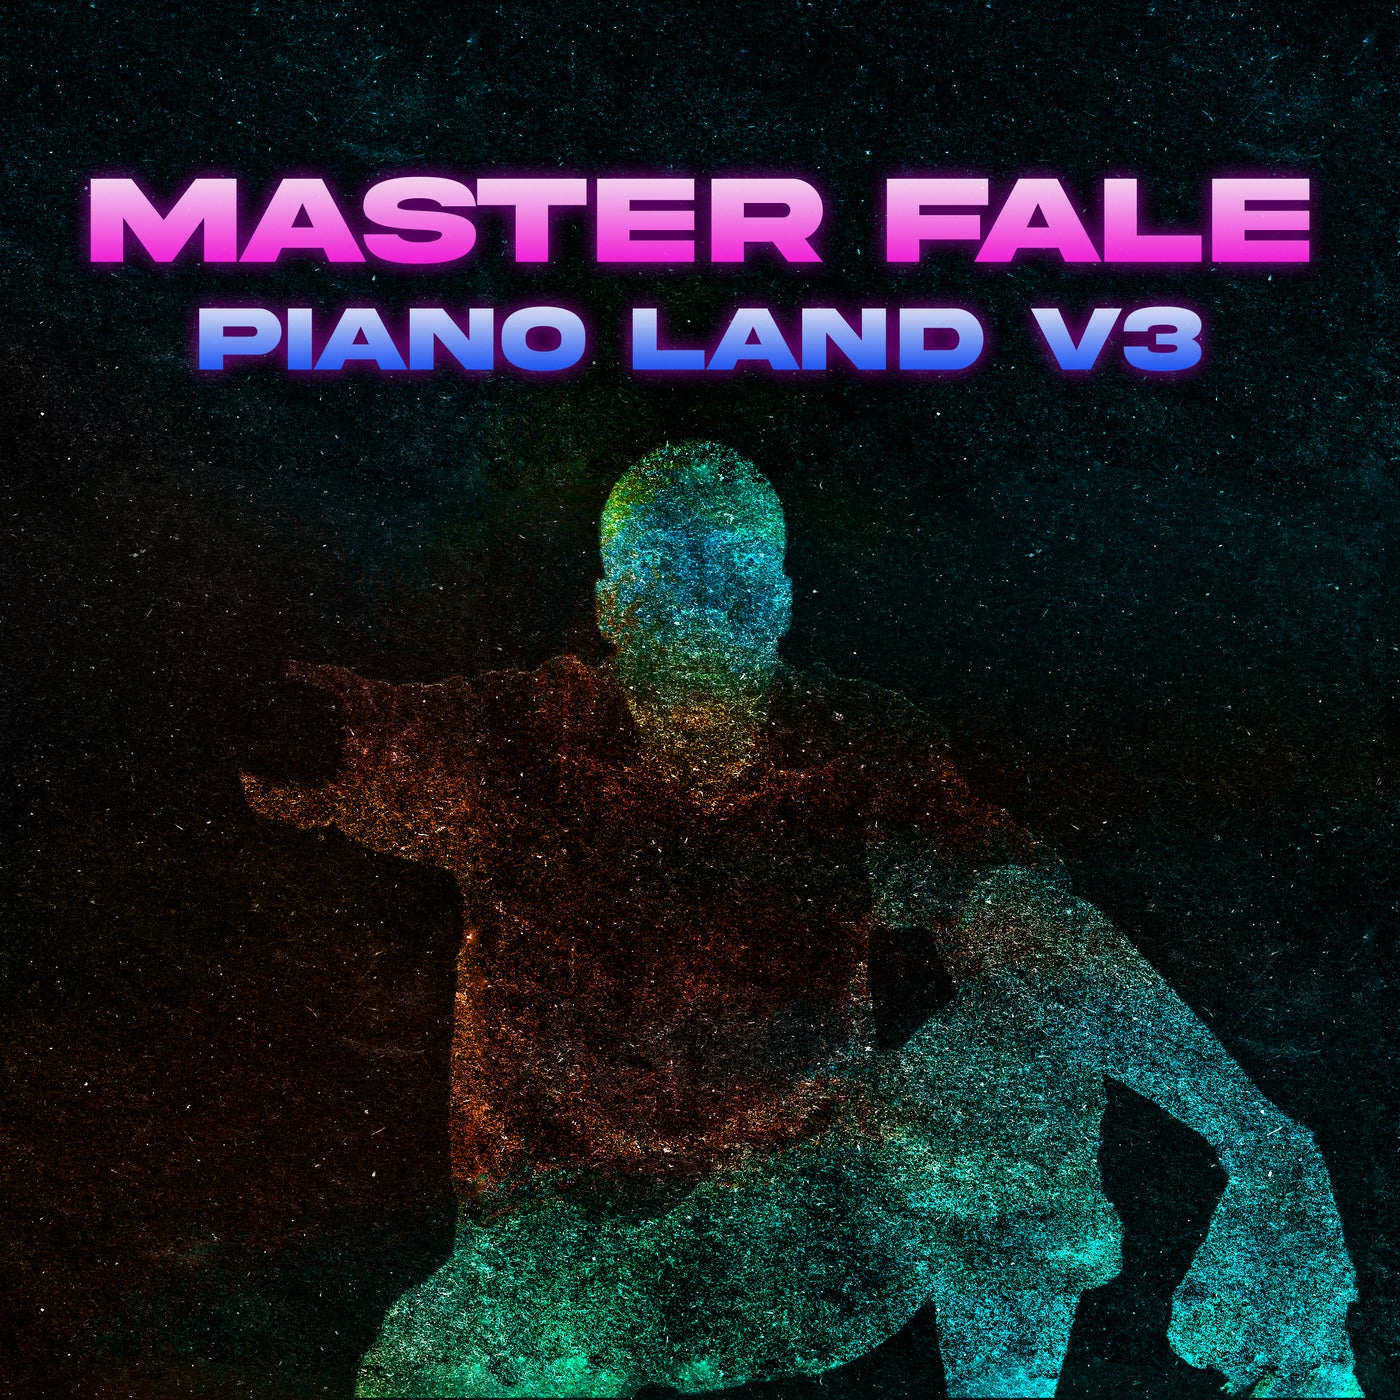 Piano Land V3